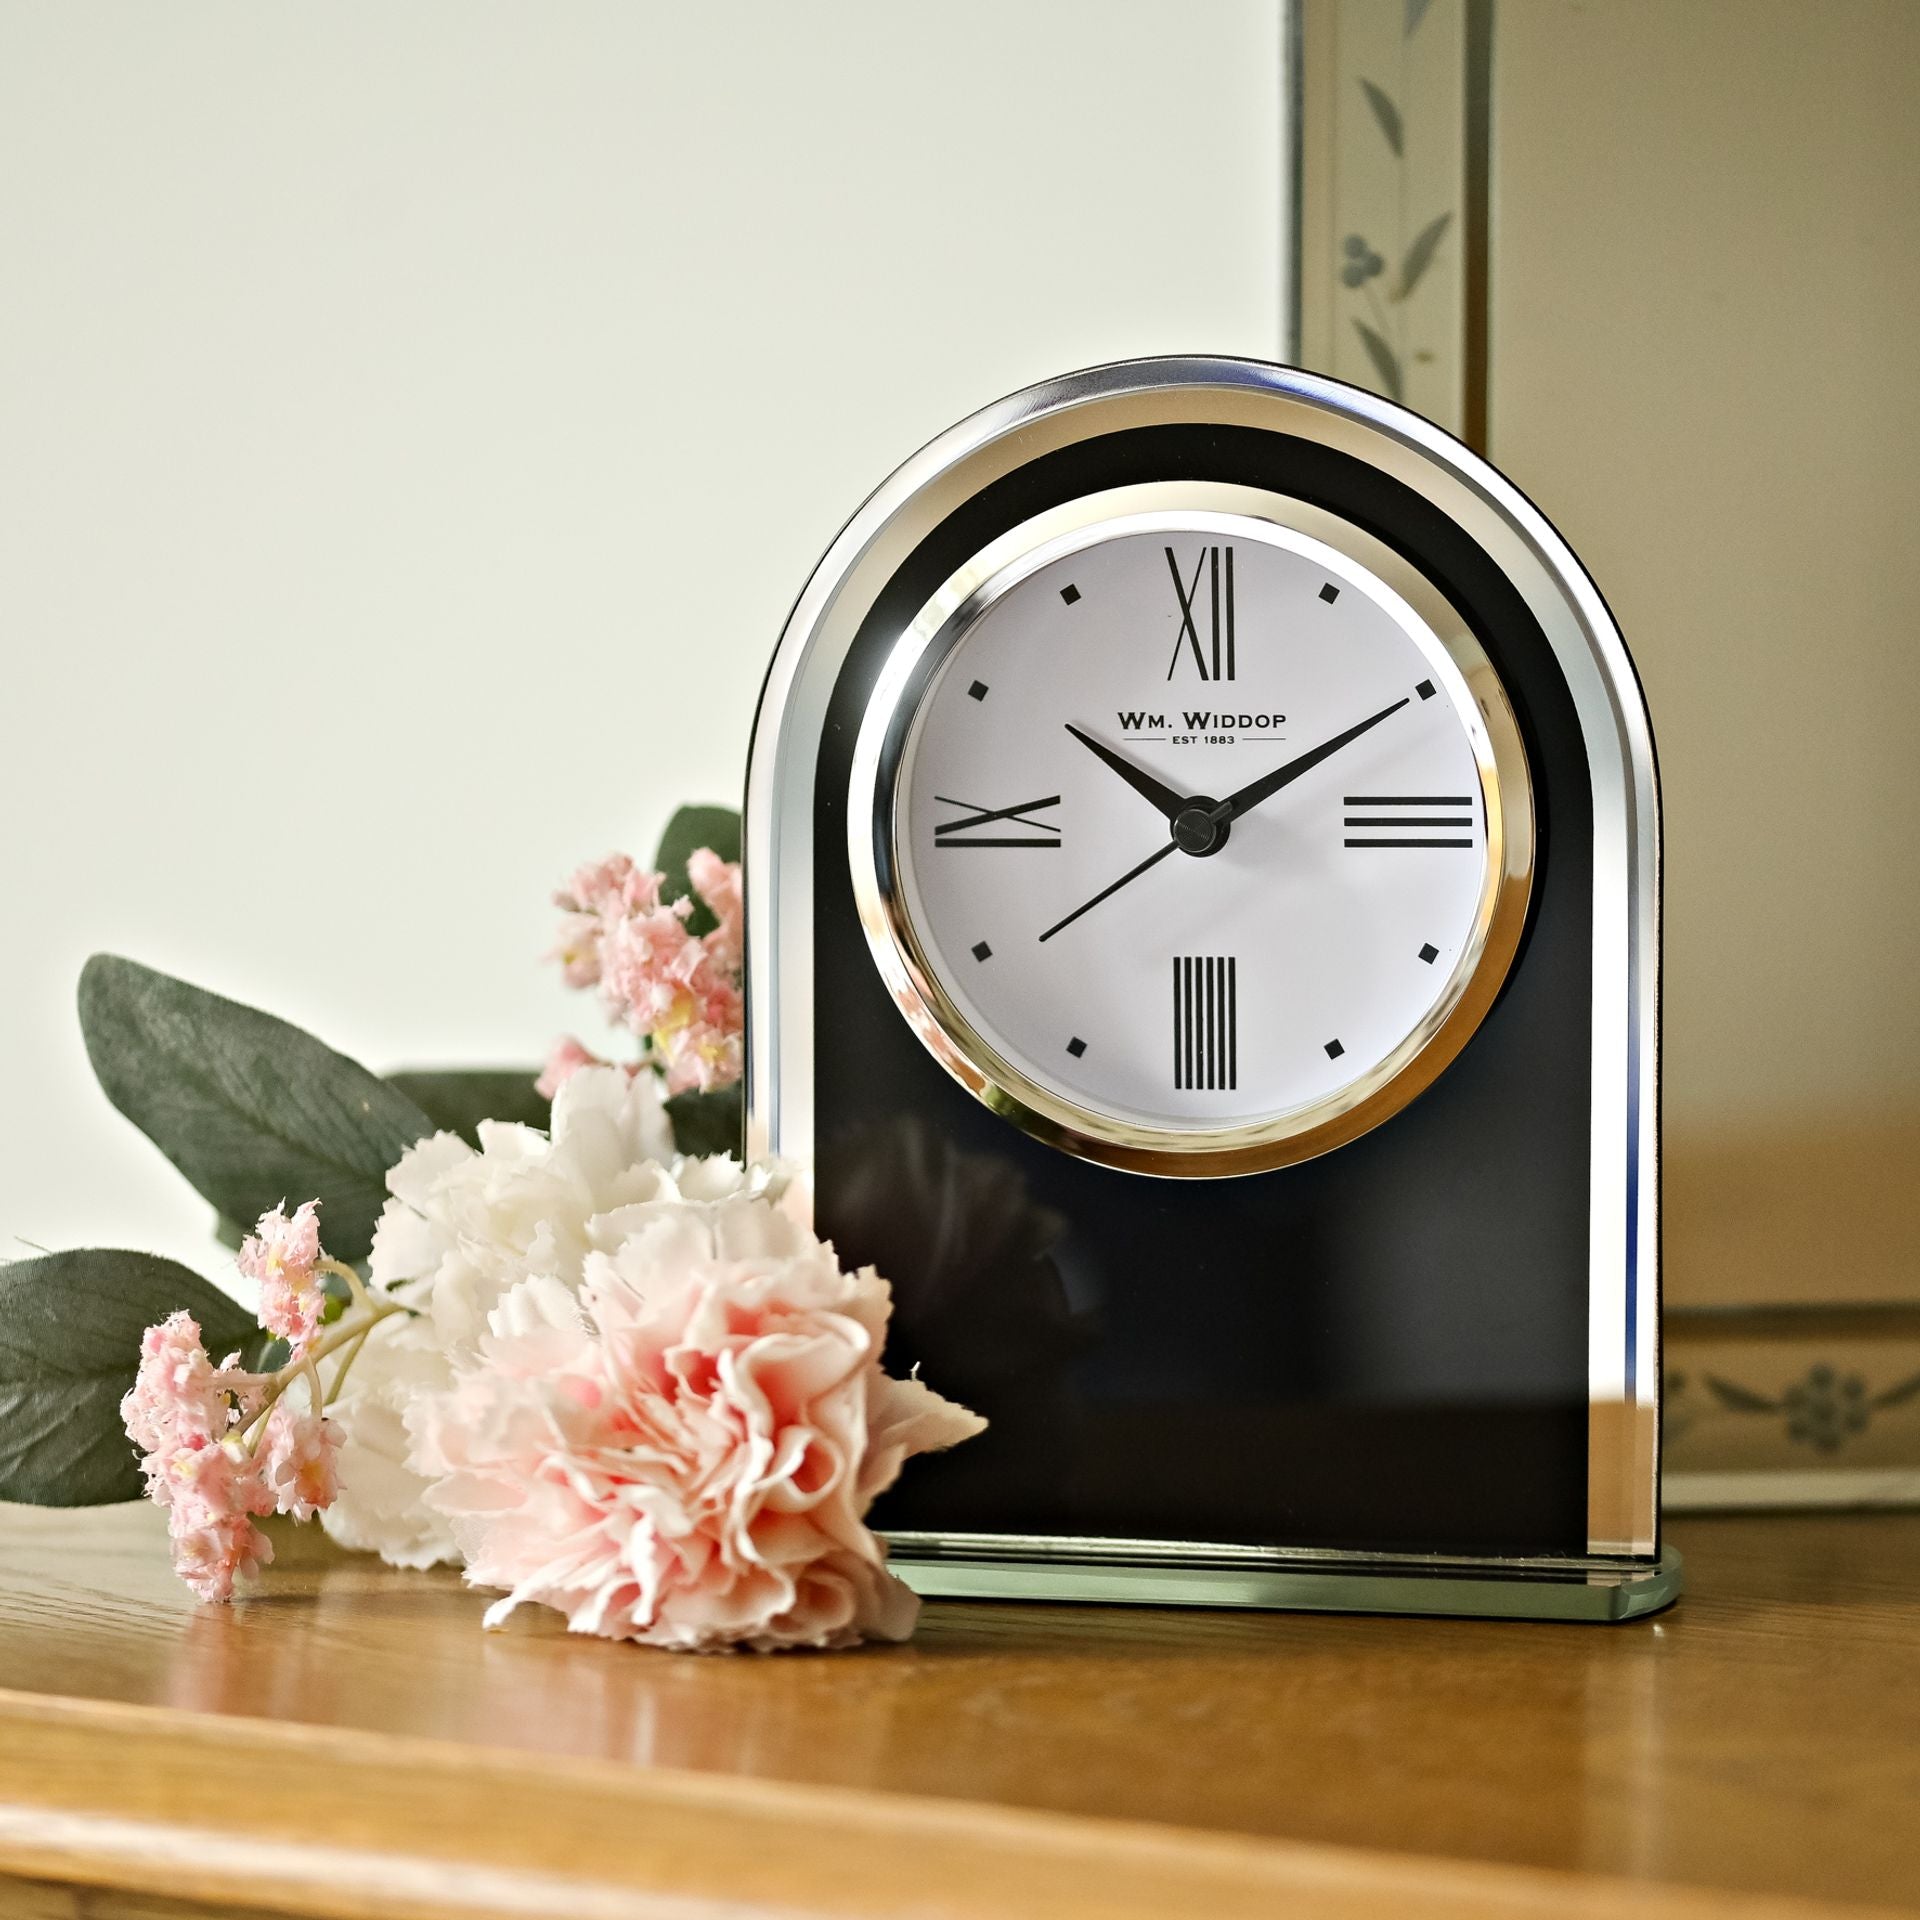 WM. Widdop Black & Clear Arched Mantel Clock